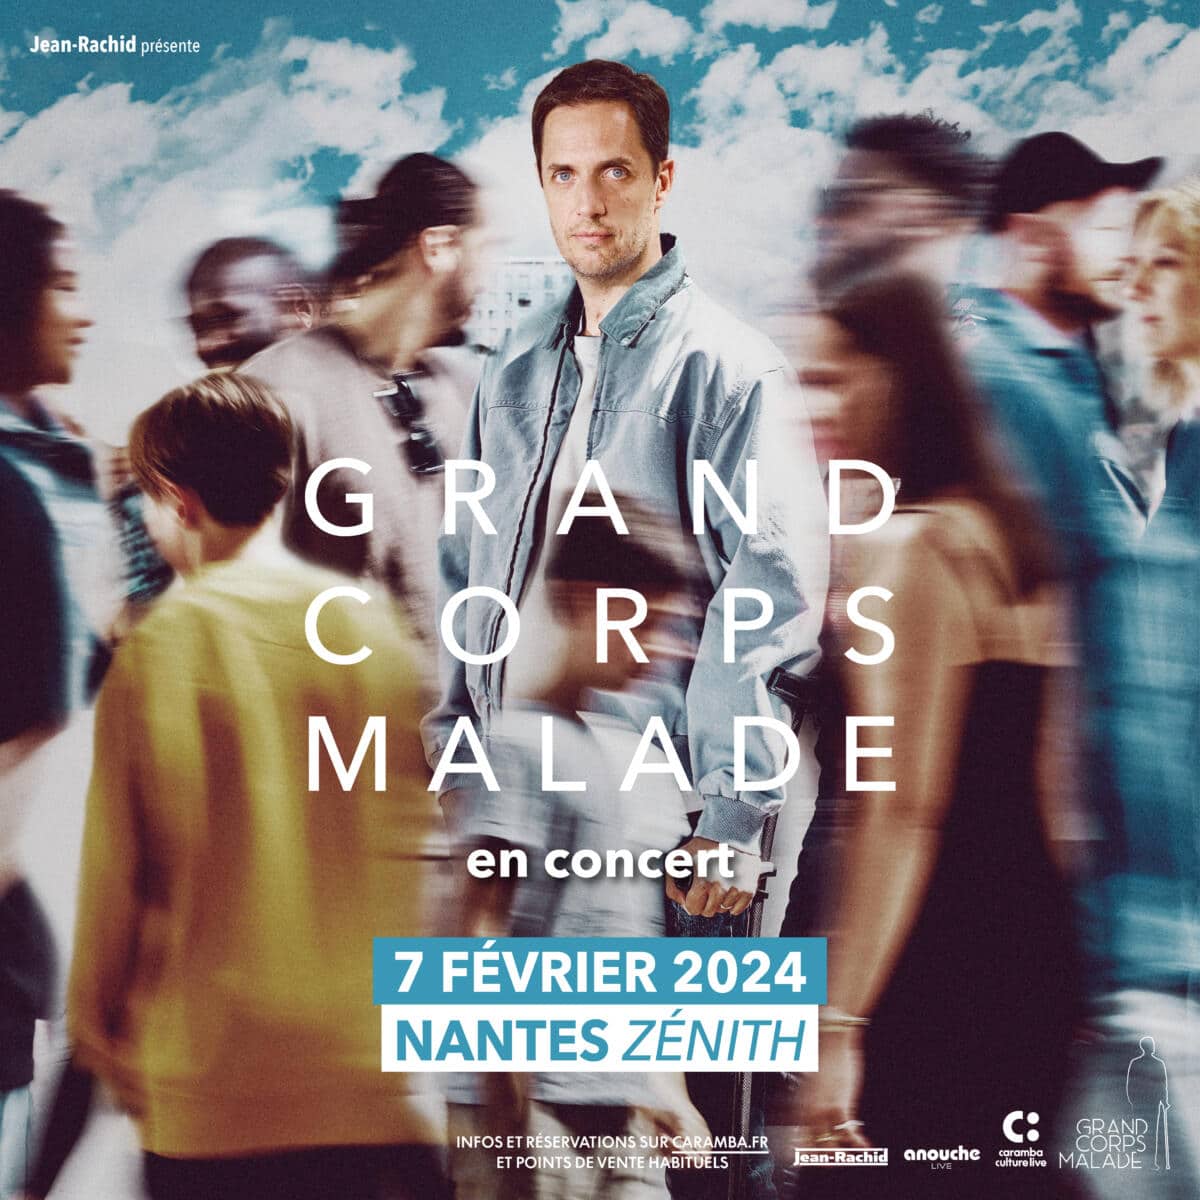 Billet spectacle Grand Corps Malade en concert à Nantes Zénith de